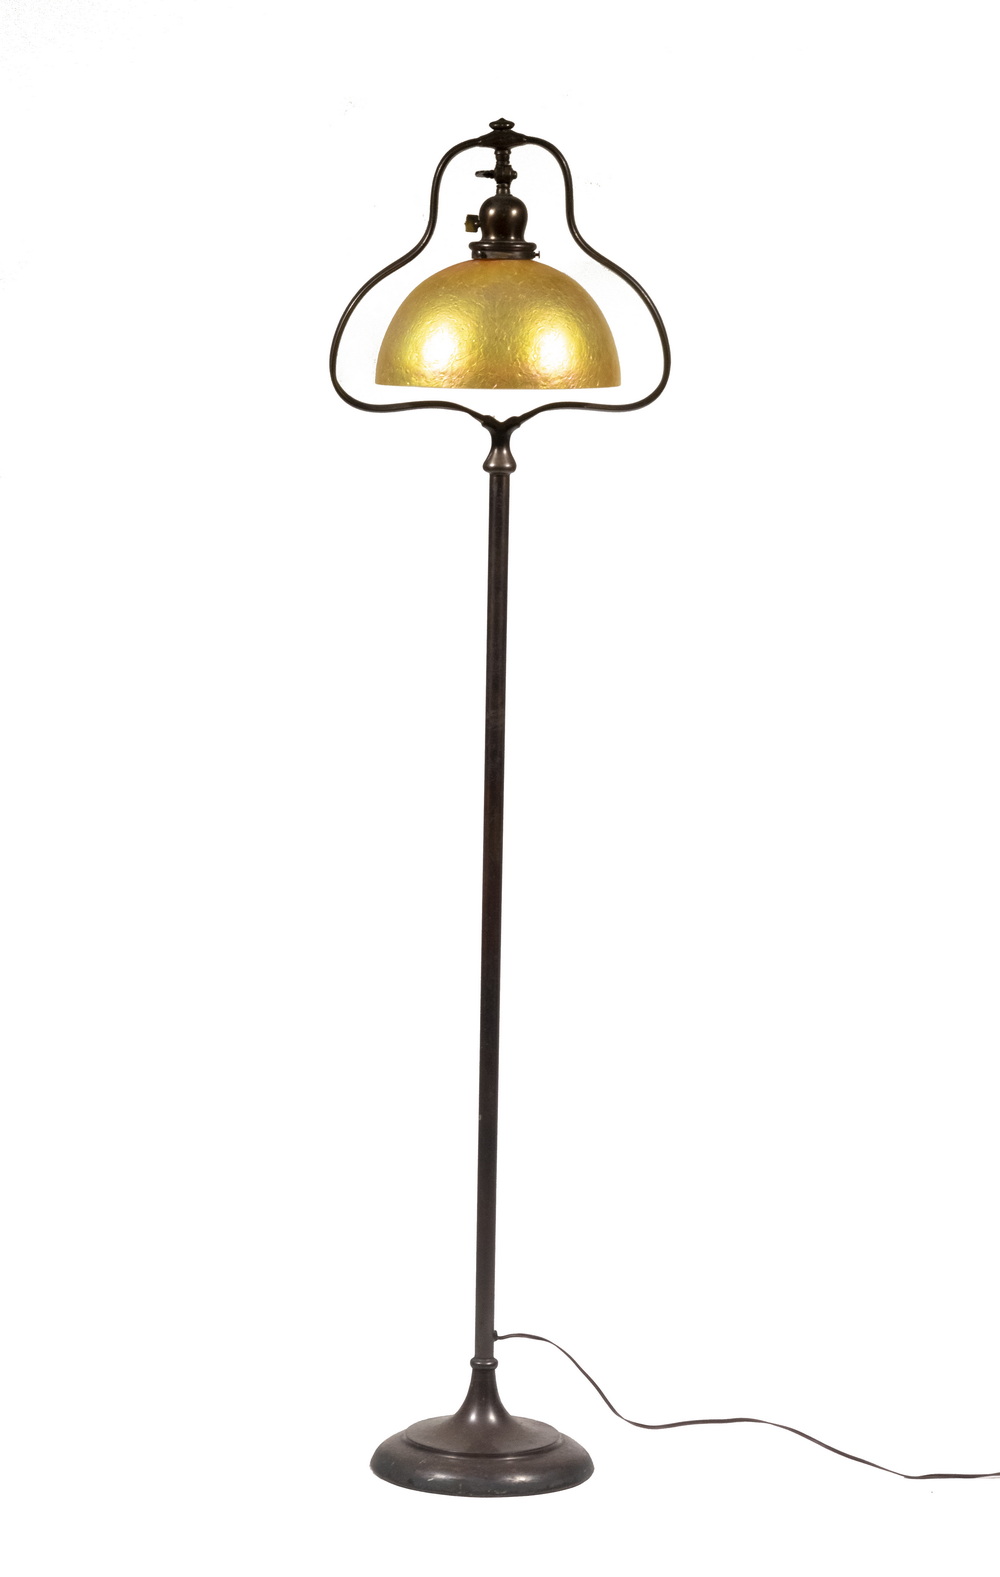 HANDEL BRONZE FLOOR LAMP WITH LUNDBERG 2b3a9b